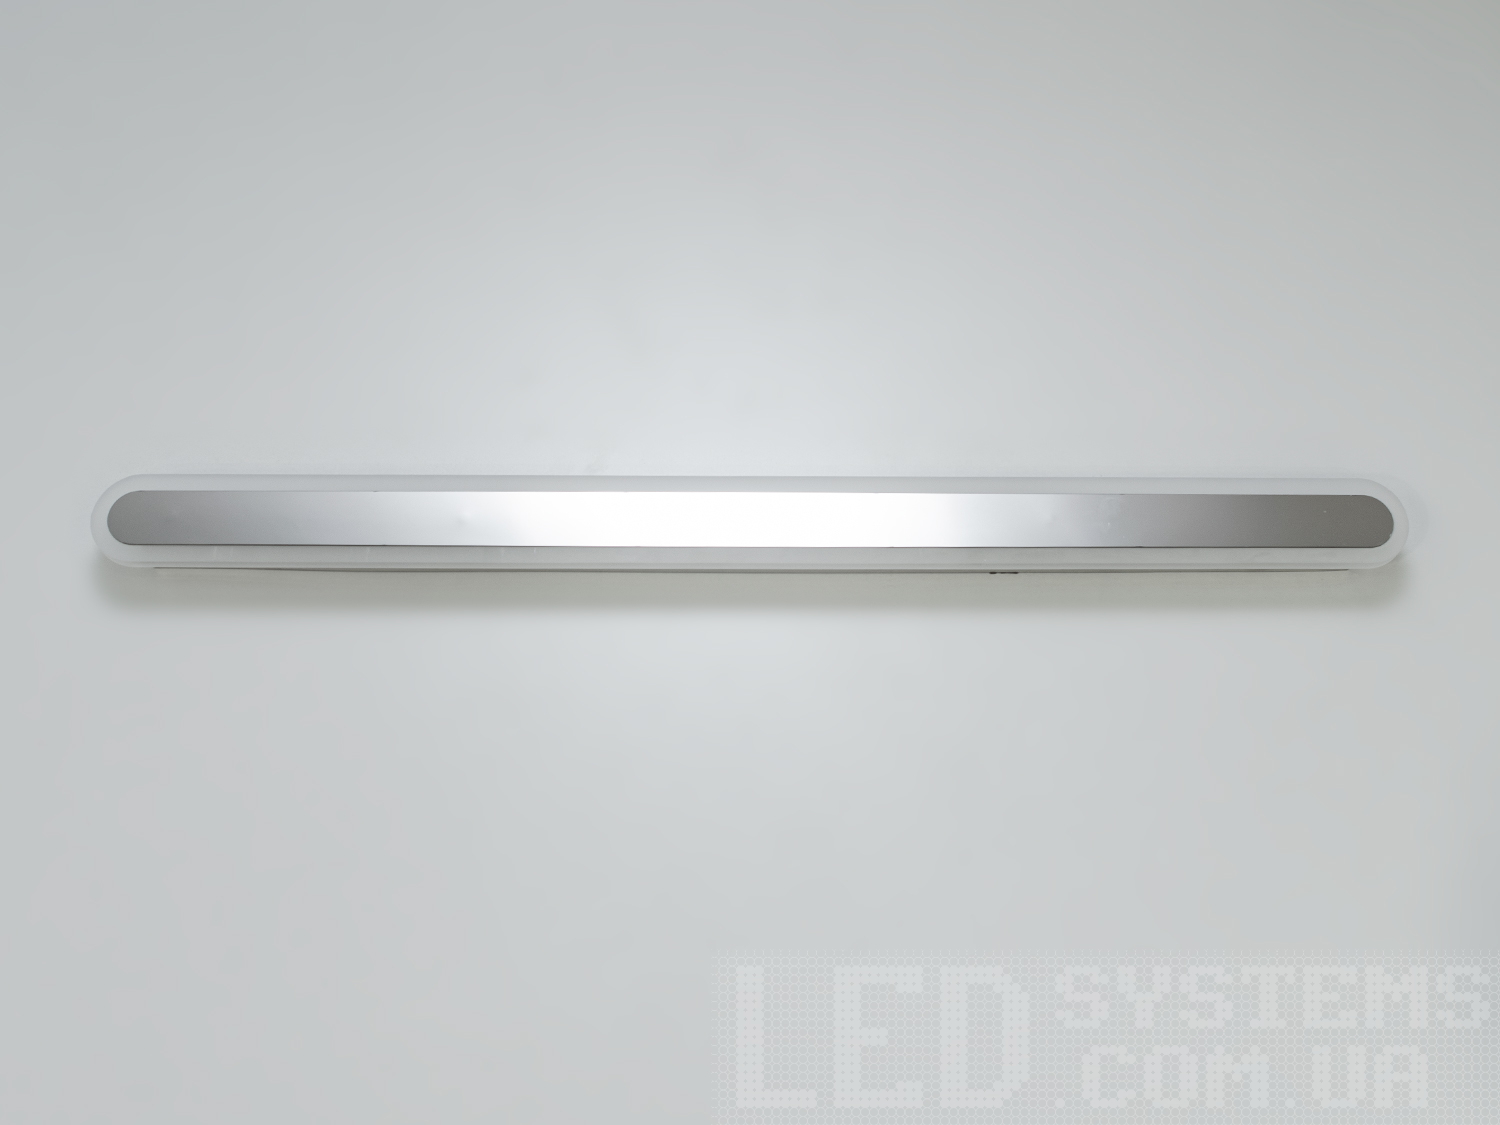 Світильник-планка з LED підсвічуванням з незвичайним виконання плафонів, що обрамляють LED лампи. LED світильник є ідеальним рішенням для акцентного (елементного) підсвічування в інтер'єрі - підсвічування дзеркал, картин, стінних ніш, особливих деталей інтер'єру і є не просто утилітарним світильником як звичайне лінійне підсвічування. Світильник має унікальні світлодіодні енергозберігаючі лампи. Які за дуже низької споживаної потужності створюють потужний світловий потік. Витончені накладні світлодіодні світильники призначені для створення яскравого світлодіодного освітлення з регульованою температурою кольору від теплого білого до холодного білого. Перемикання спектрів світіння світлодіодного світильника здійснюється простим вимкненням-вмиканням. Кріпиться до будь-яких видів поверхонь універсальним кріпленням-на планку.